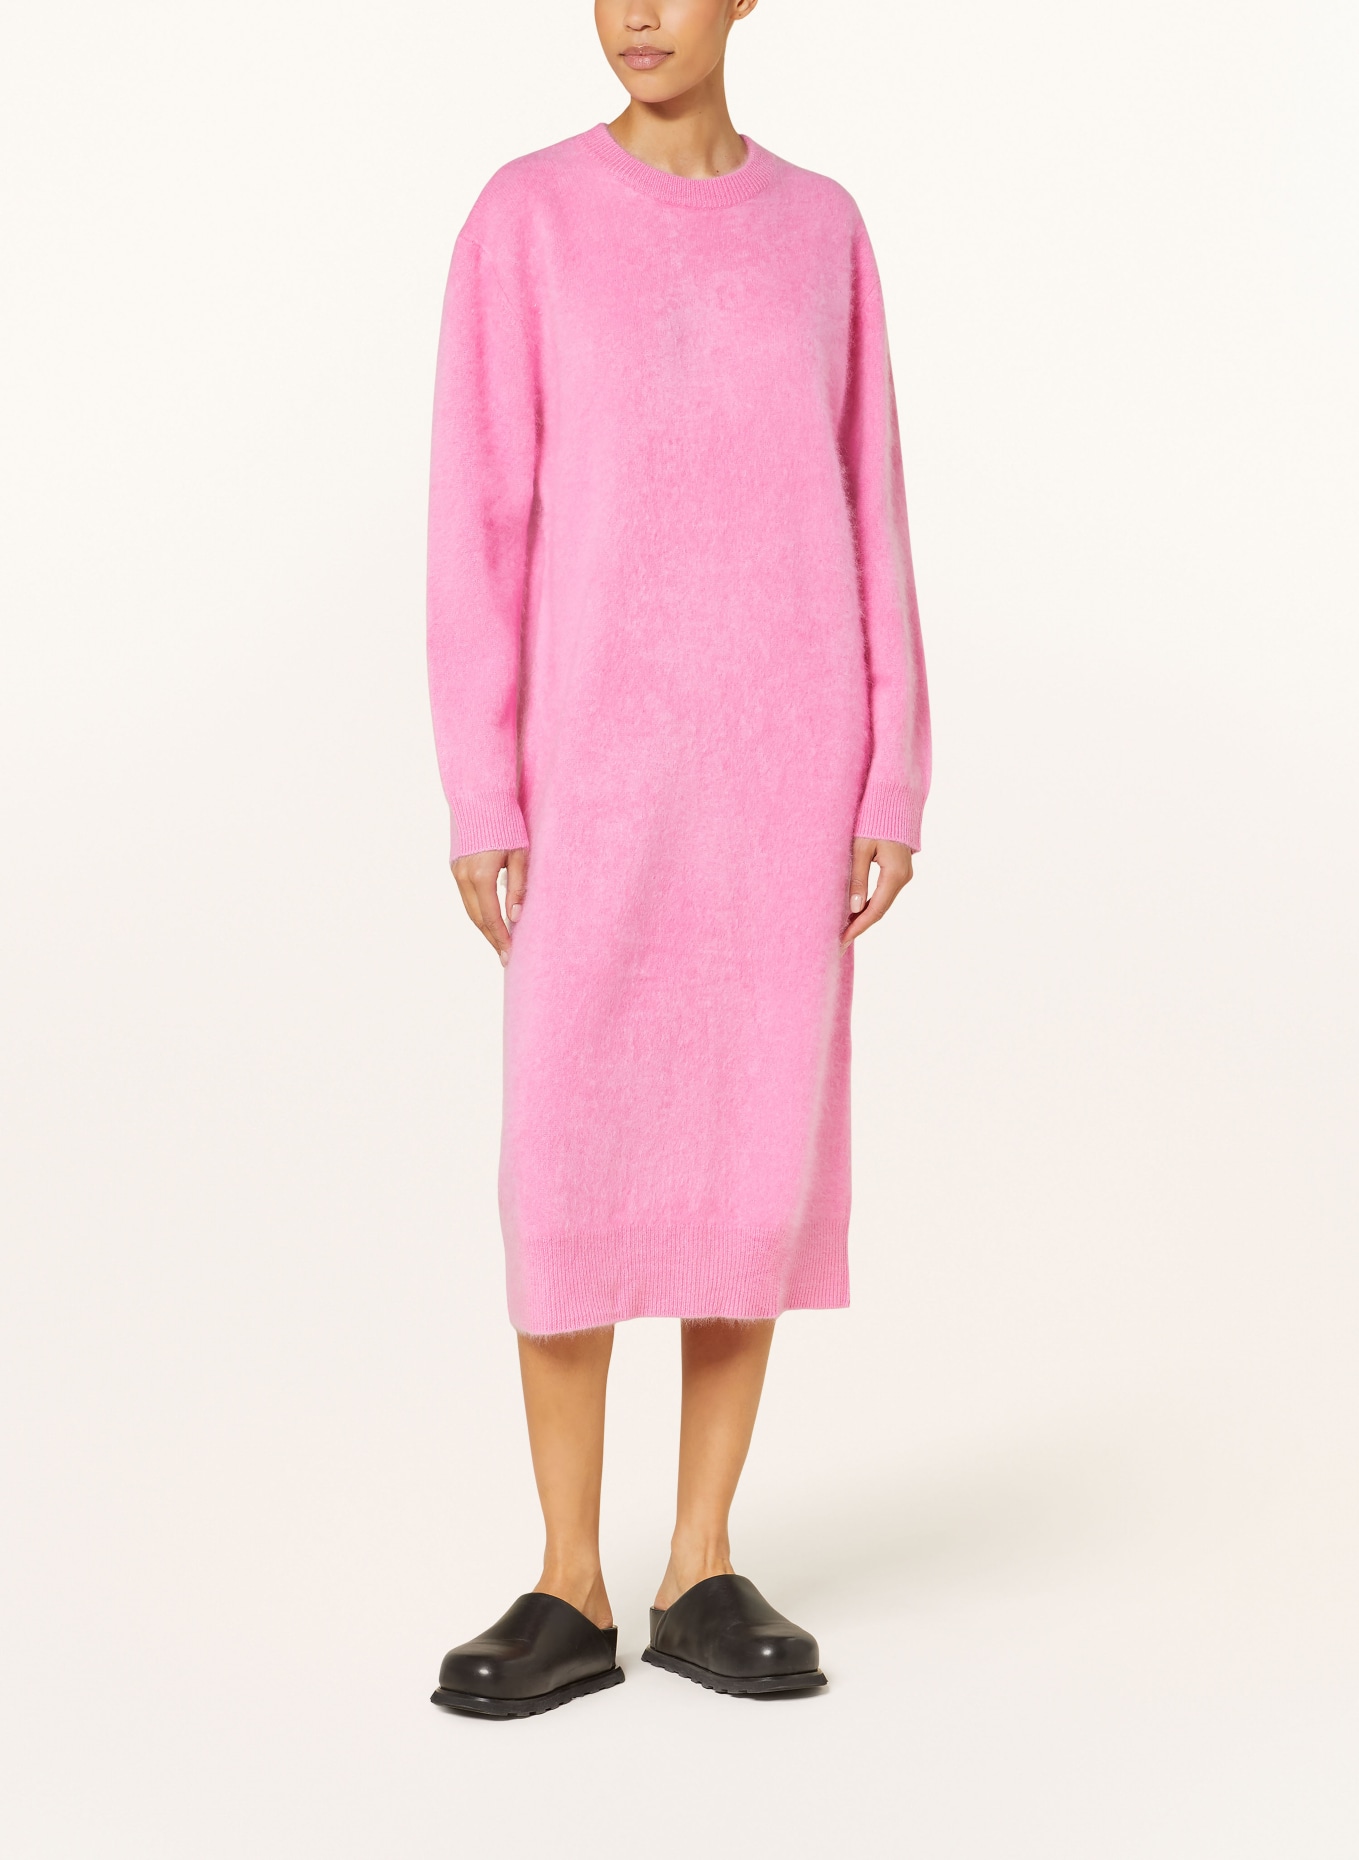 LISA YANG Cashmere knit dress, Color: PINK (Image 2)